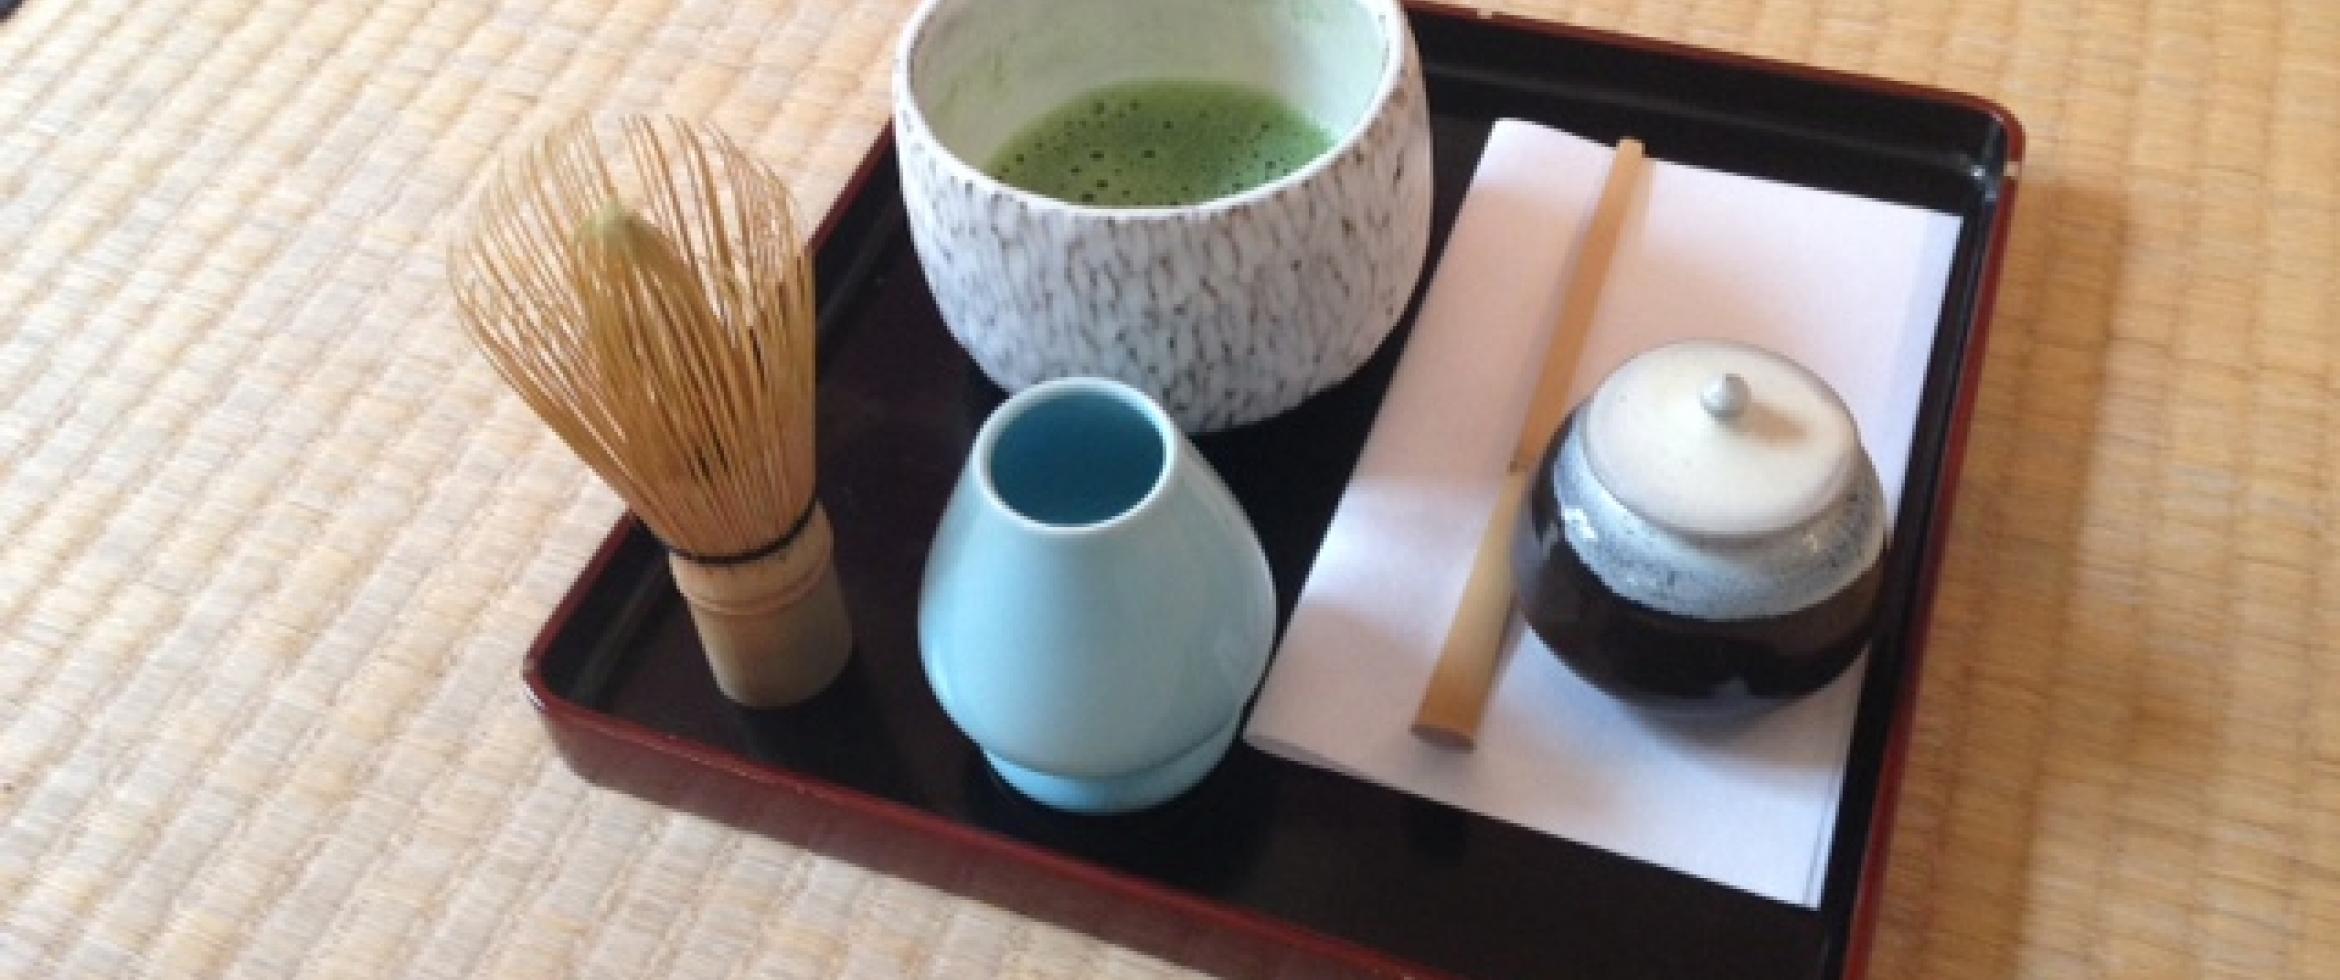 Accessoires pour thé vert japonais Matcha : Chawan, Chasen